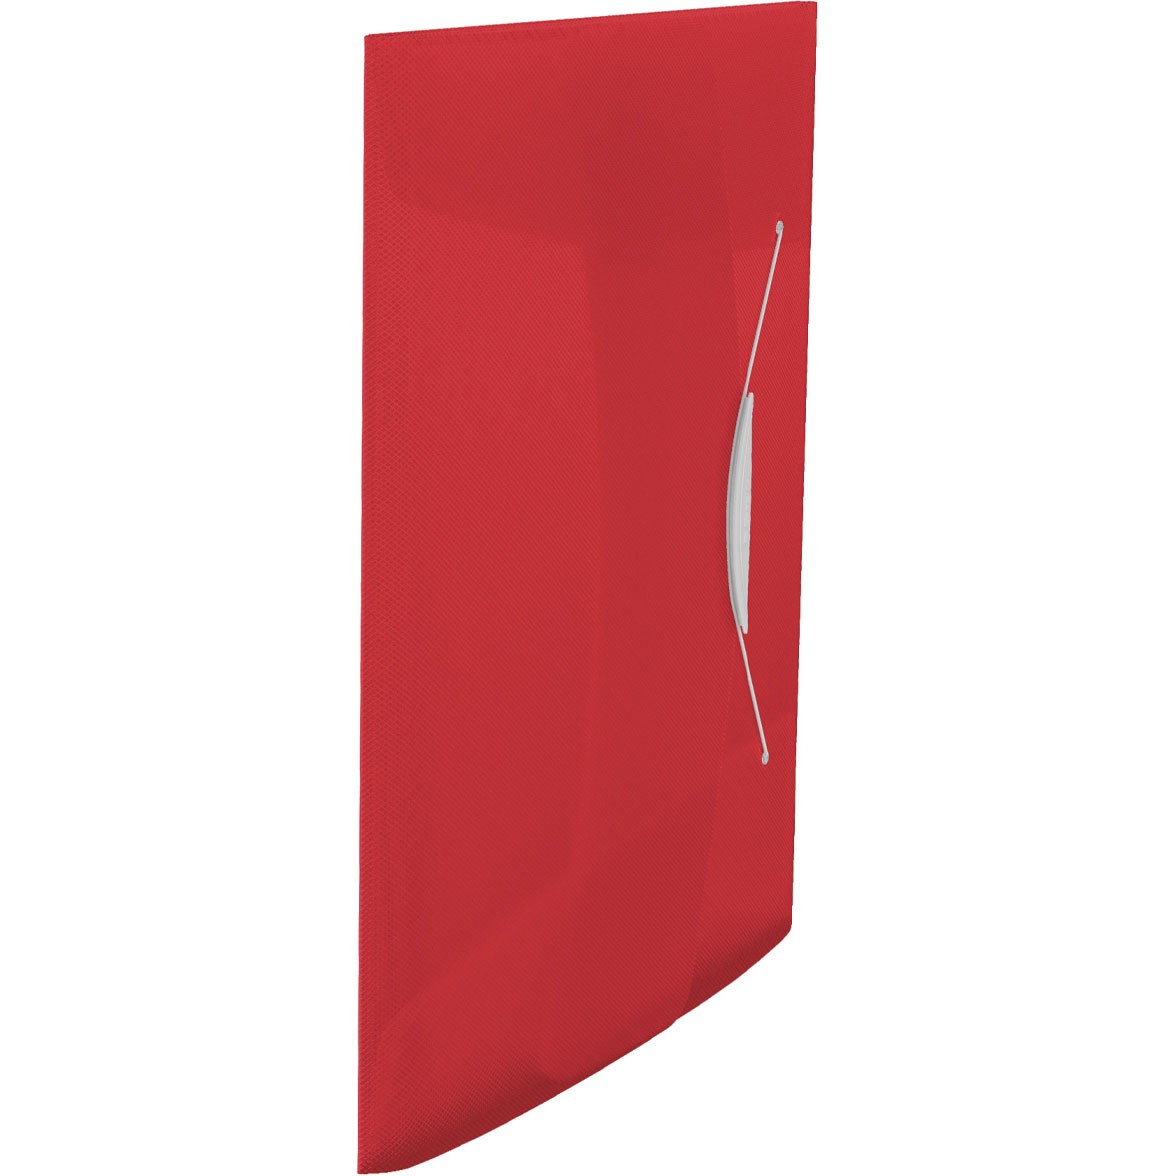 Esselte VIVIDA elastikmappe med 3 klapper i A4 i farven rød